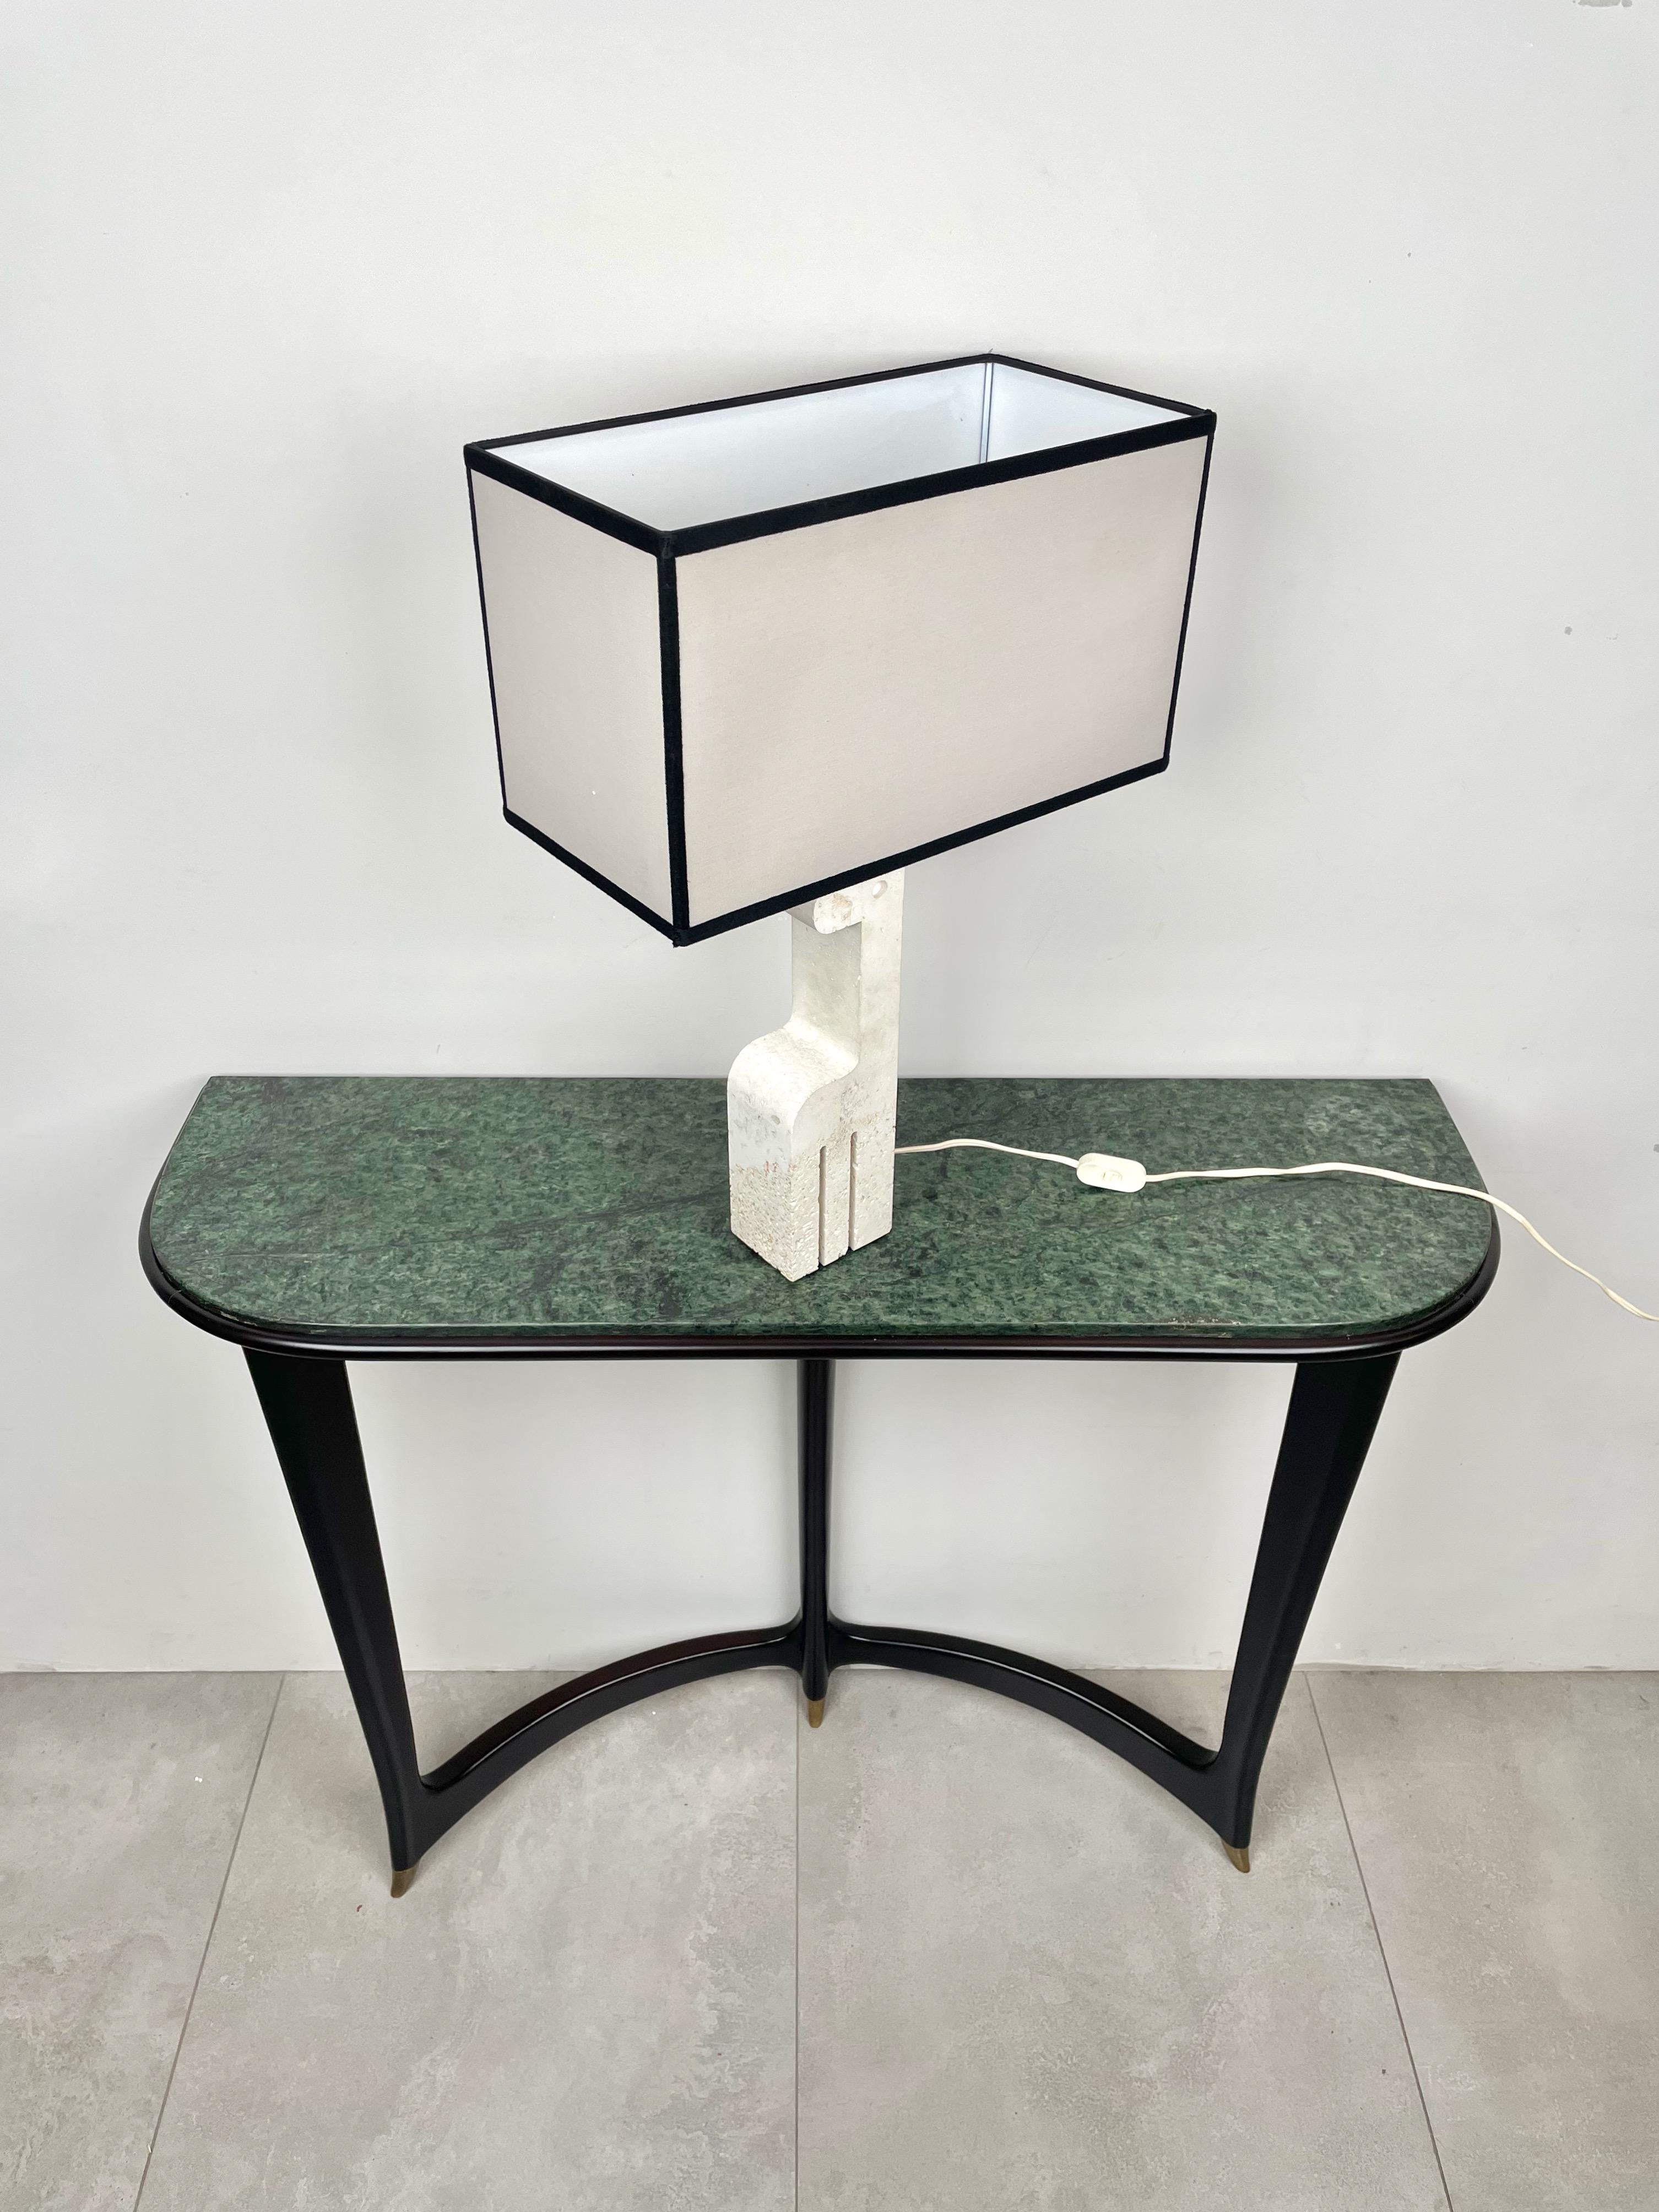 Lampe de table en marbre travertin de Rapolano avec la base en forme de girafe par le Fratelli Mannelli italien (étiquette originale encore attachée), années 1970.

Dimensions sans abat-jour : H 43 x L 10 x P 8 (cm).

Dimensions avec abat-jour :